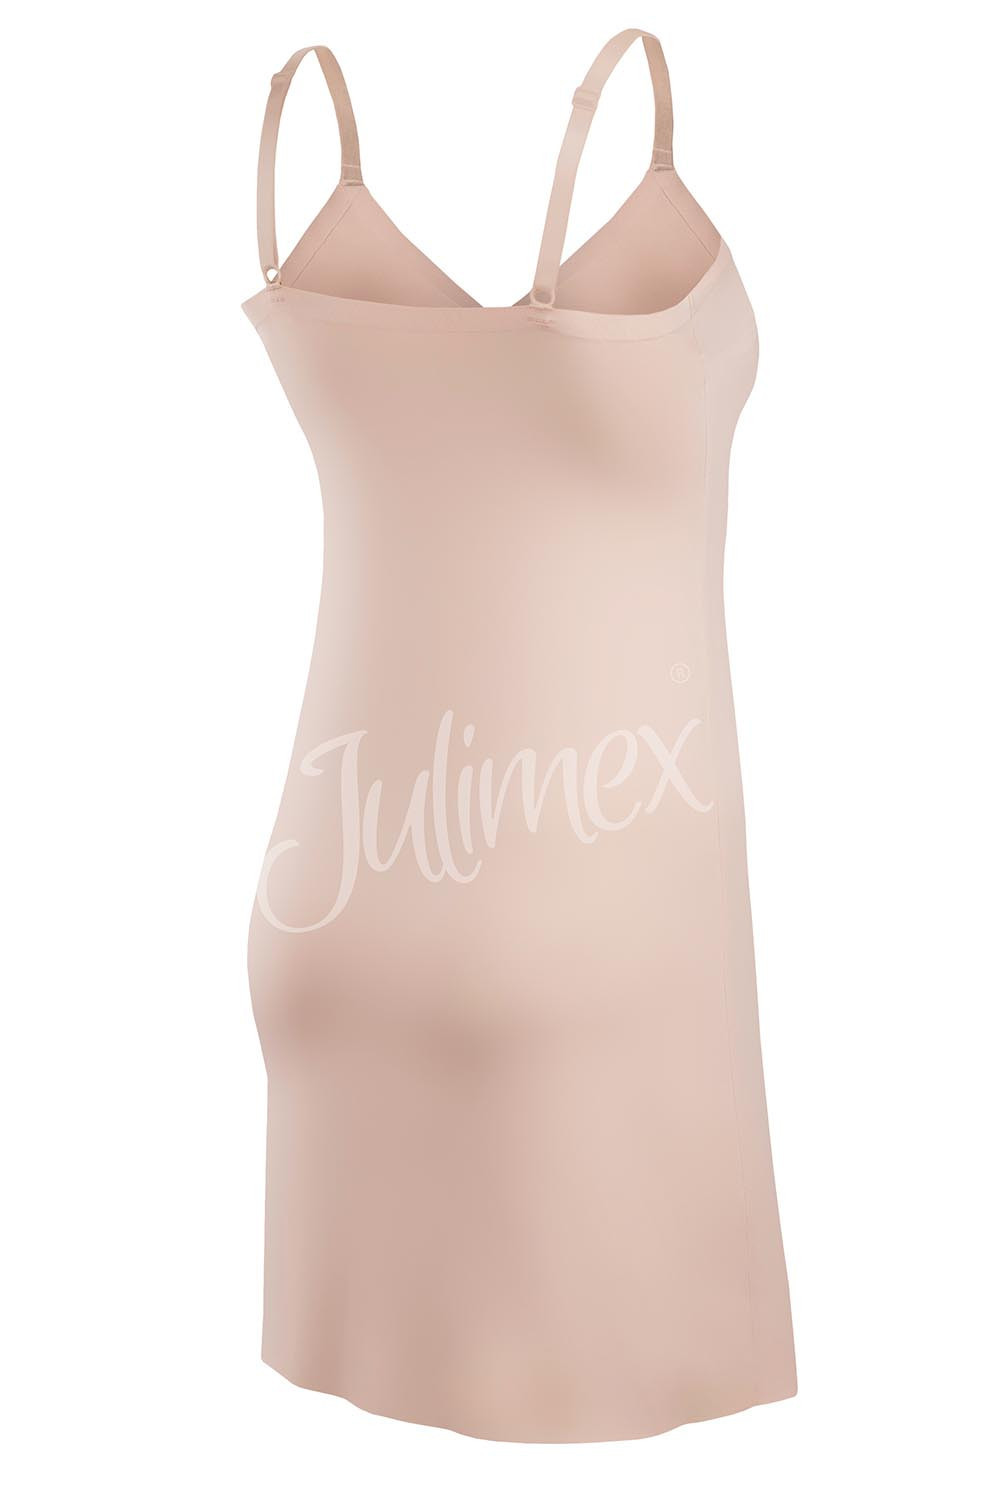 Julimex Halka Soft & Smooth kolor:natural XL